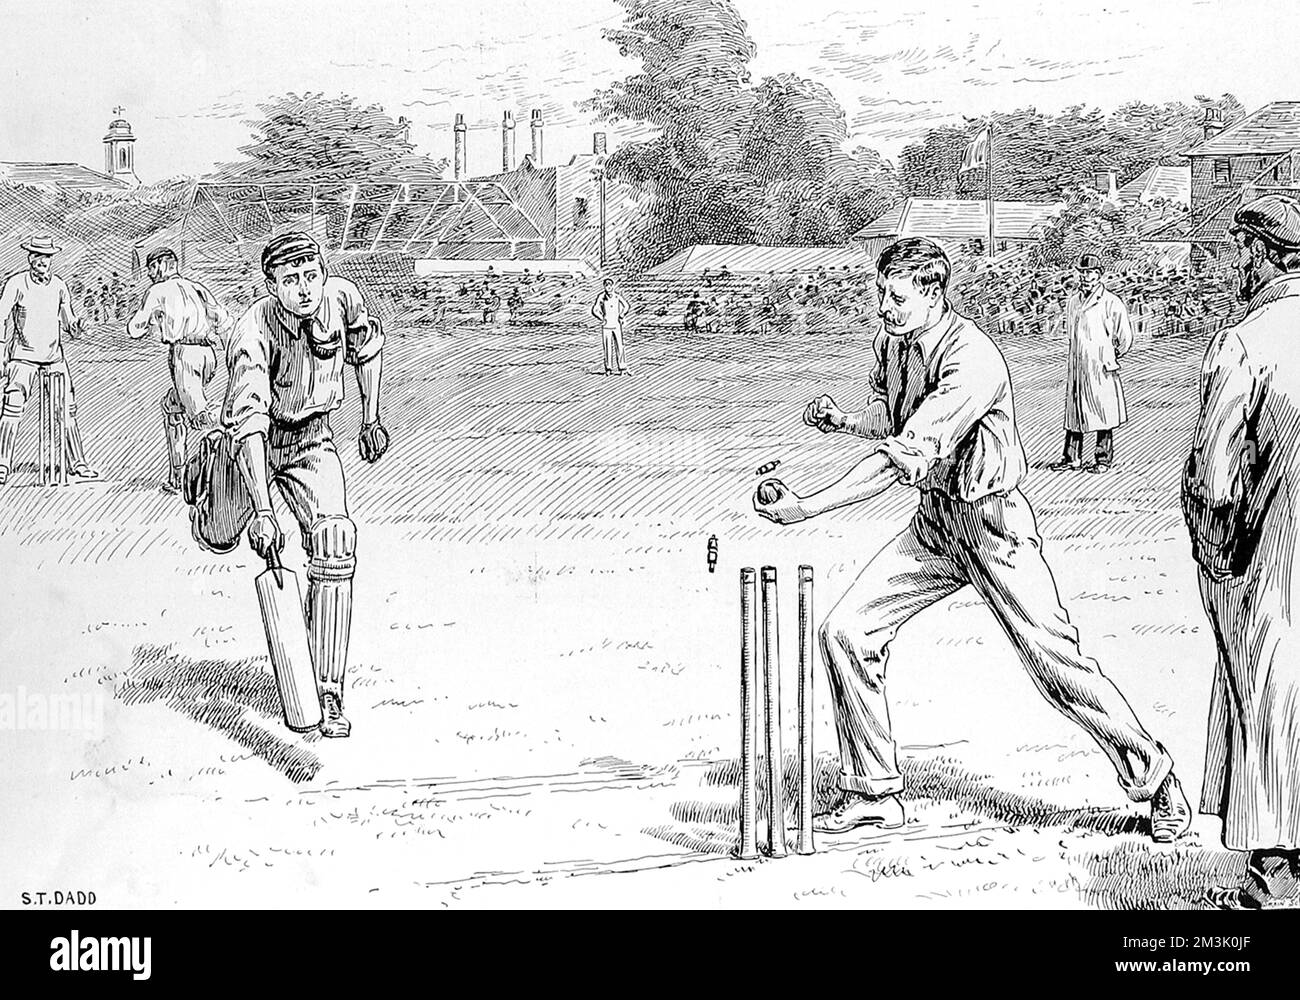 Gravur, die zeigt, wie ein Fielder einen der Schlagmänner während eines Cricket-Spiels auf Lord's Cricket Ground, London, 1895, verlässt. Datum: 1895 Stockfoto